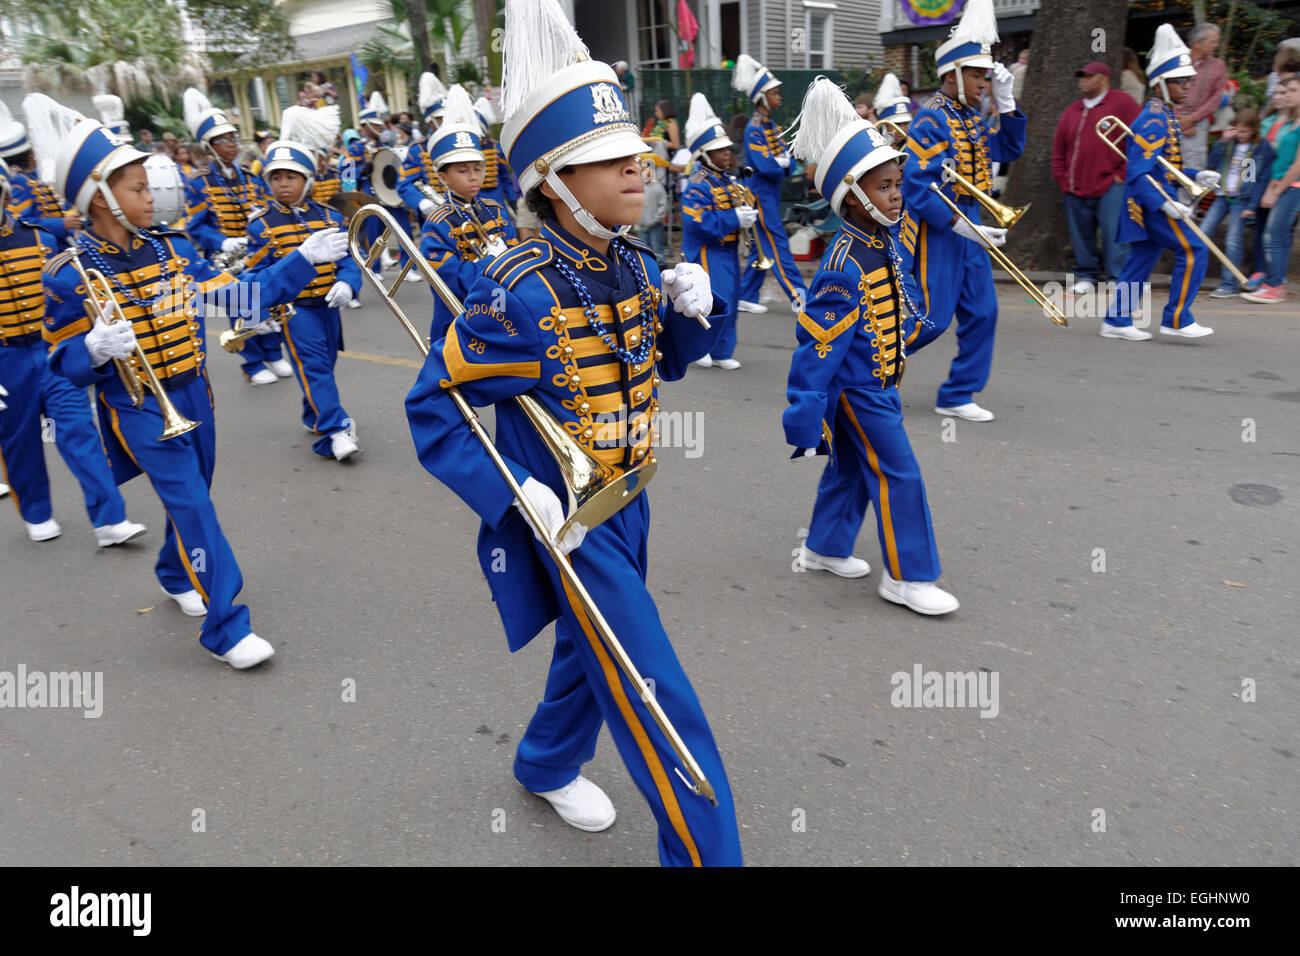 Children's fanfare, défilé, Mardi Gras, Nouvelle Orléans, Louisiane, USA Banque D'Images